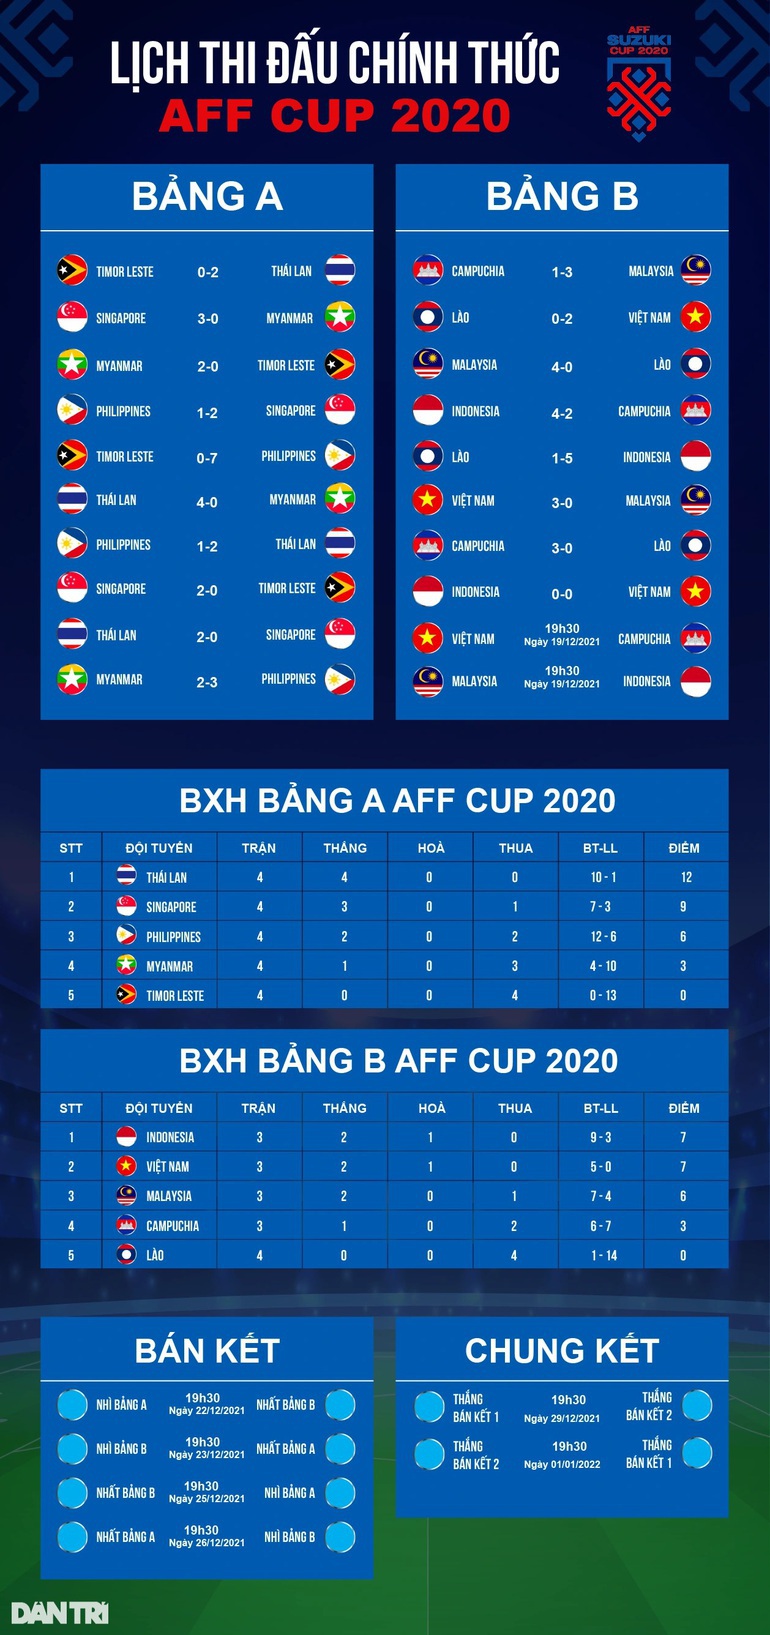 Chuyên gia châu Á dự đoán thế nào về trận tuyển Việt Nam gặp Campuchia? - 4